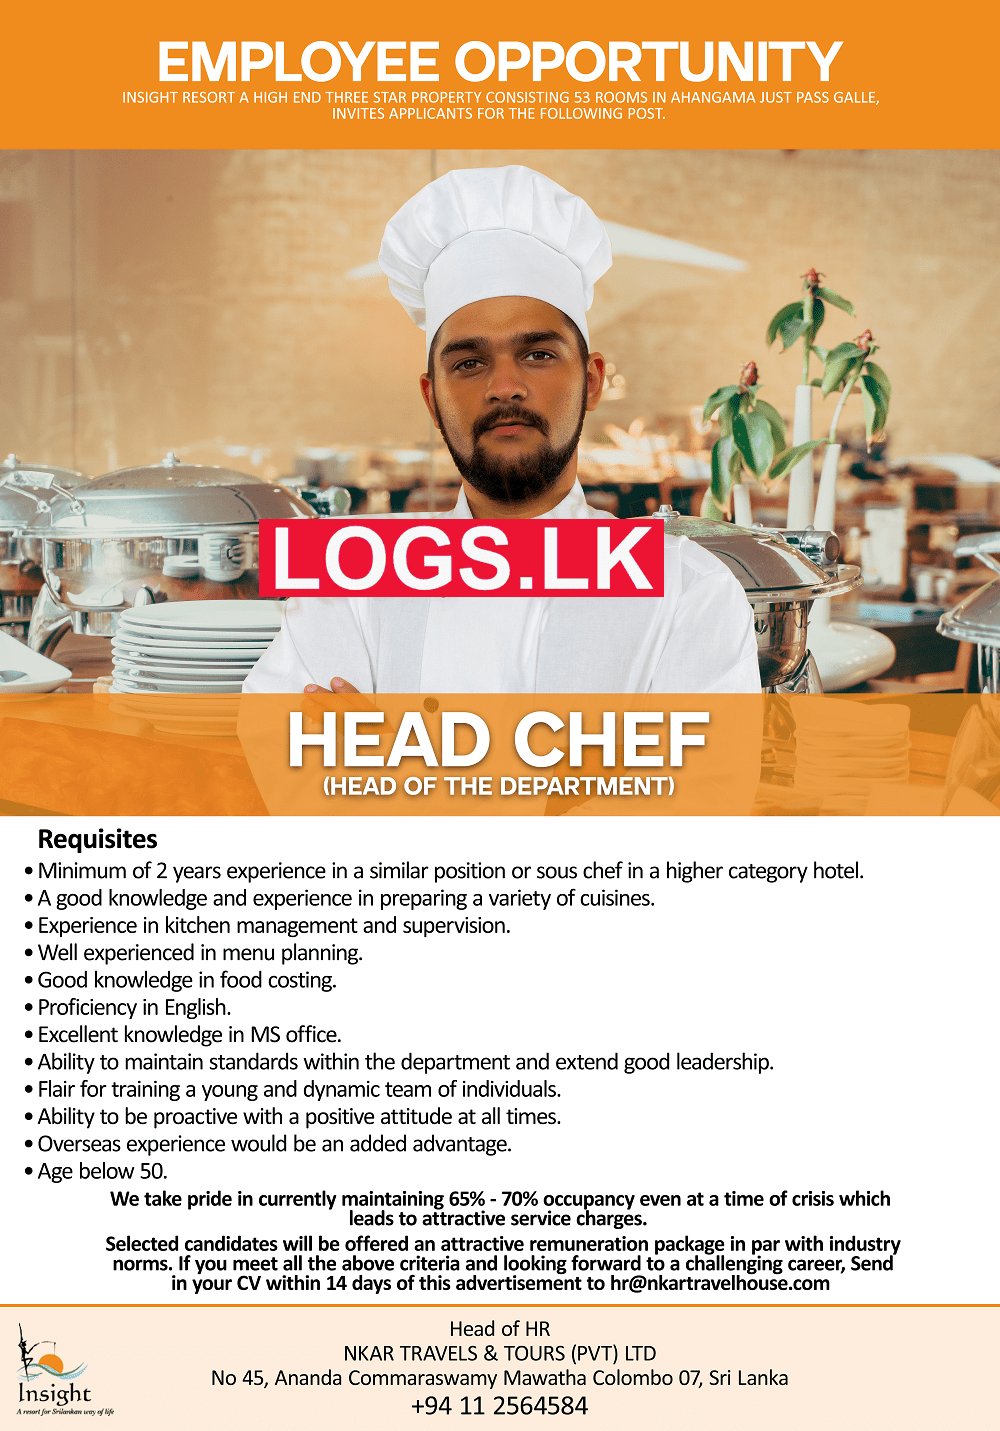 Head Chef Job Vacancy at NKAR Travels & Tours (Pvt) Ltd Jobs Application, Details Download